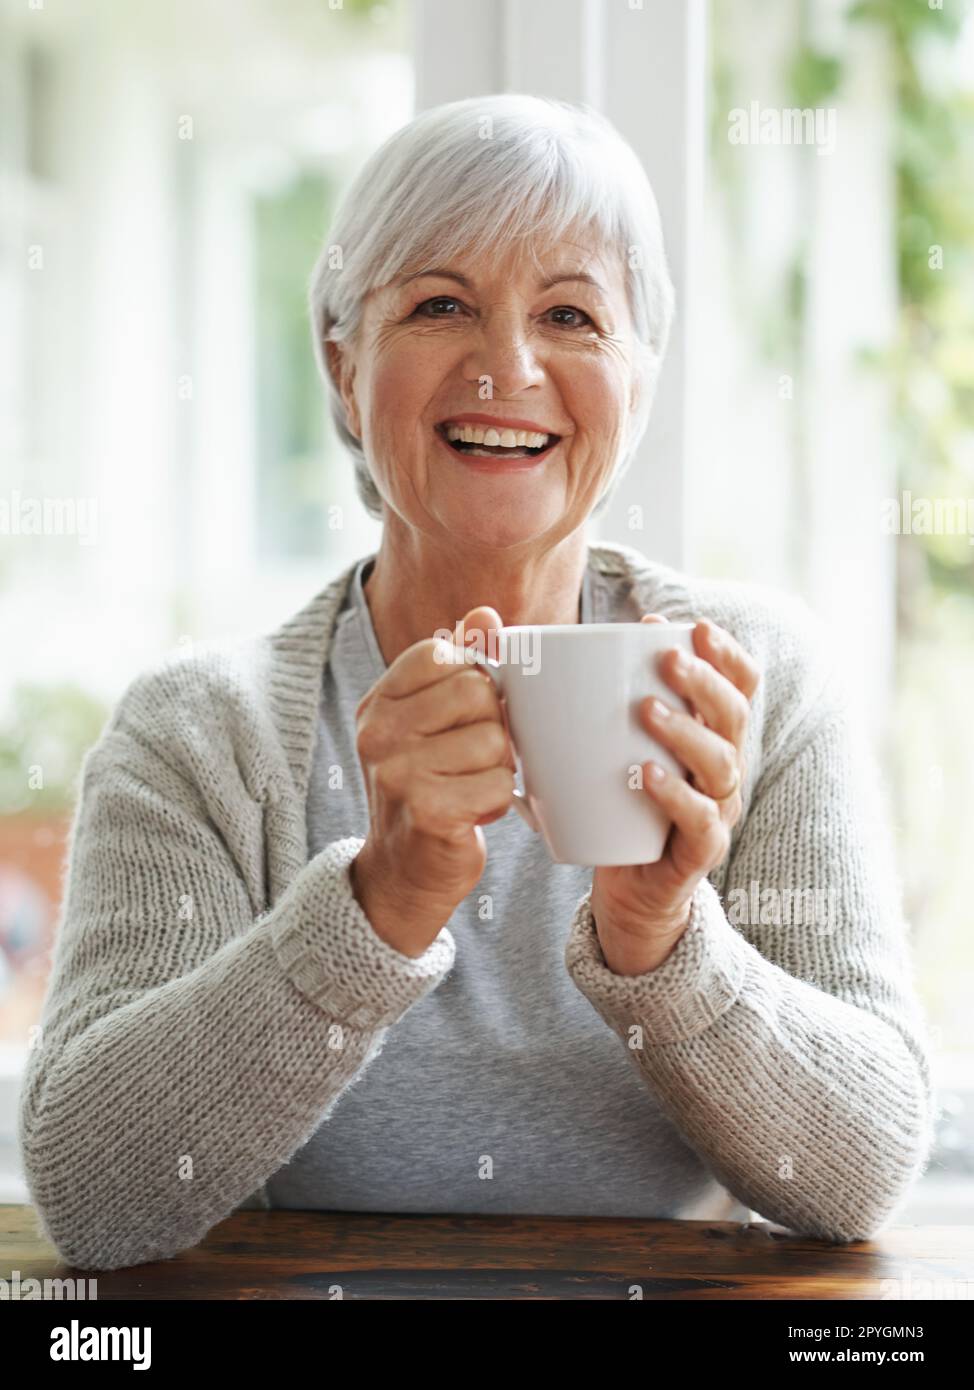 Quella prima tazza di caffè illumina sempre la mia giornata. Una donna anziana felice godendo una tazza di caffè al suo tavolo da cucina - ritratto. Foto Stock